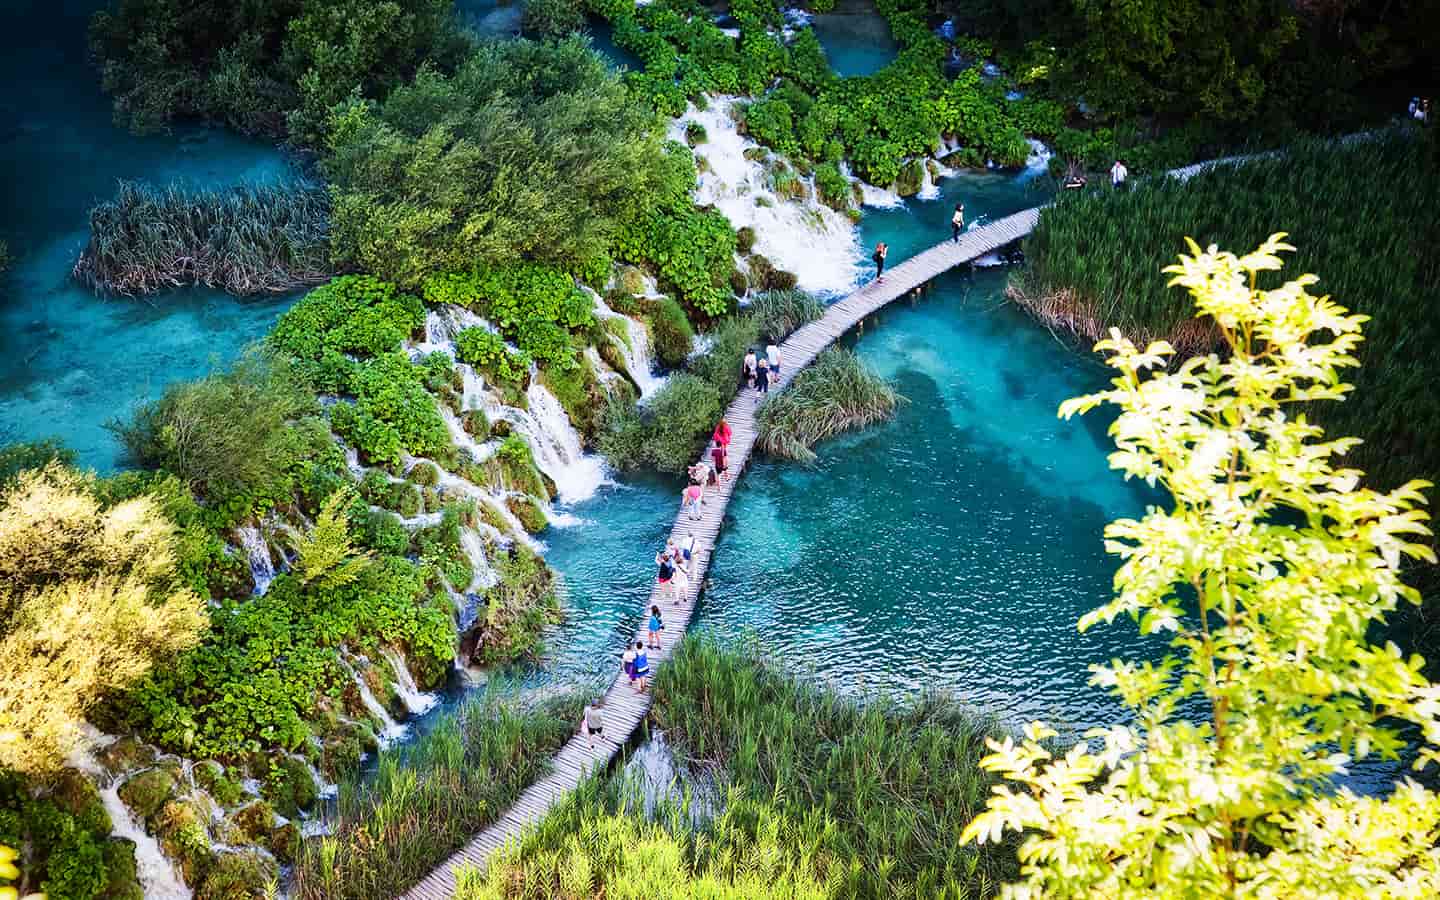 Sommerblick auf die schönen Wasserfälle im Nationalpark der Plitvicer Seen, Kroatien